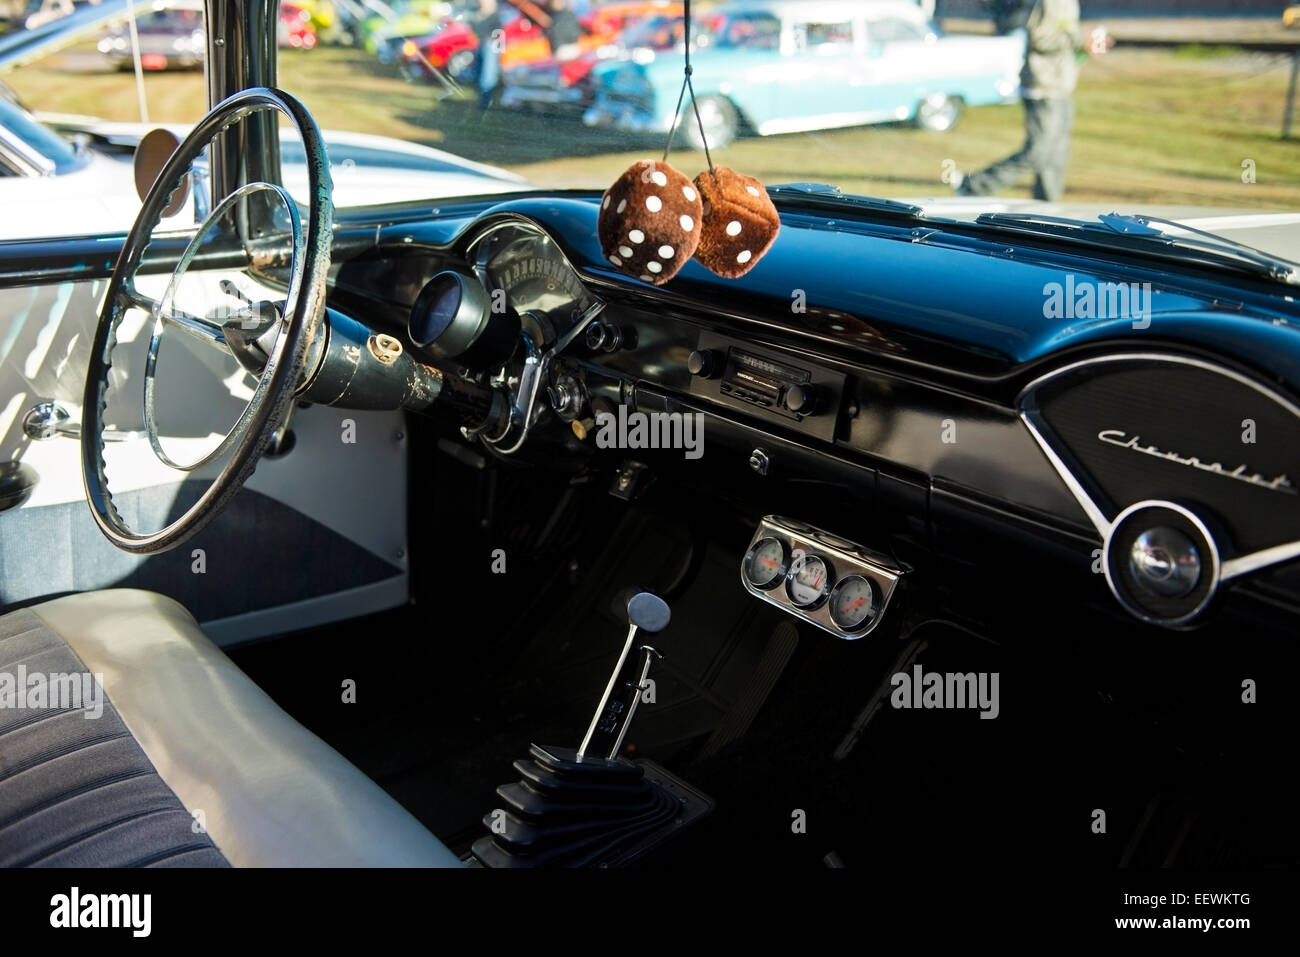 https://c8.alamy.com/compde/eewktg/1960-chevrolet-classic-auto-armaturenbrett-detail-mit-lenkrad-und-fuzzy-dice-von-spiegel-hangen-eewktg.jpg